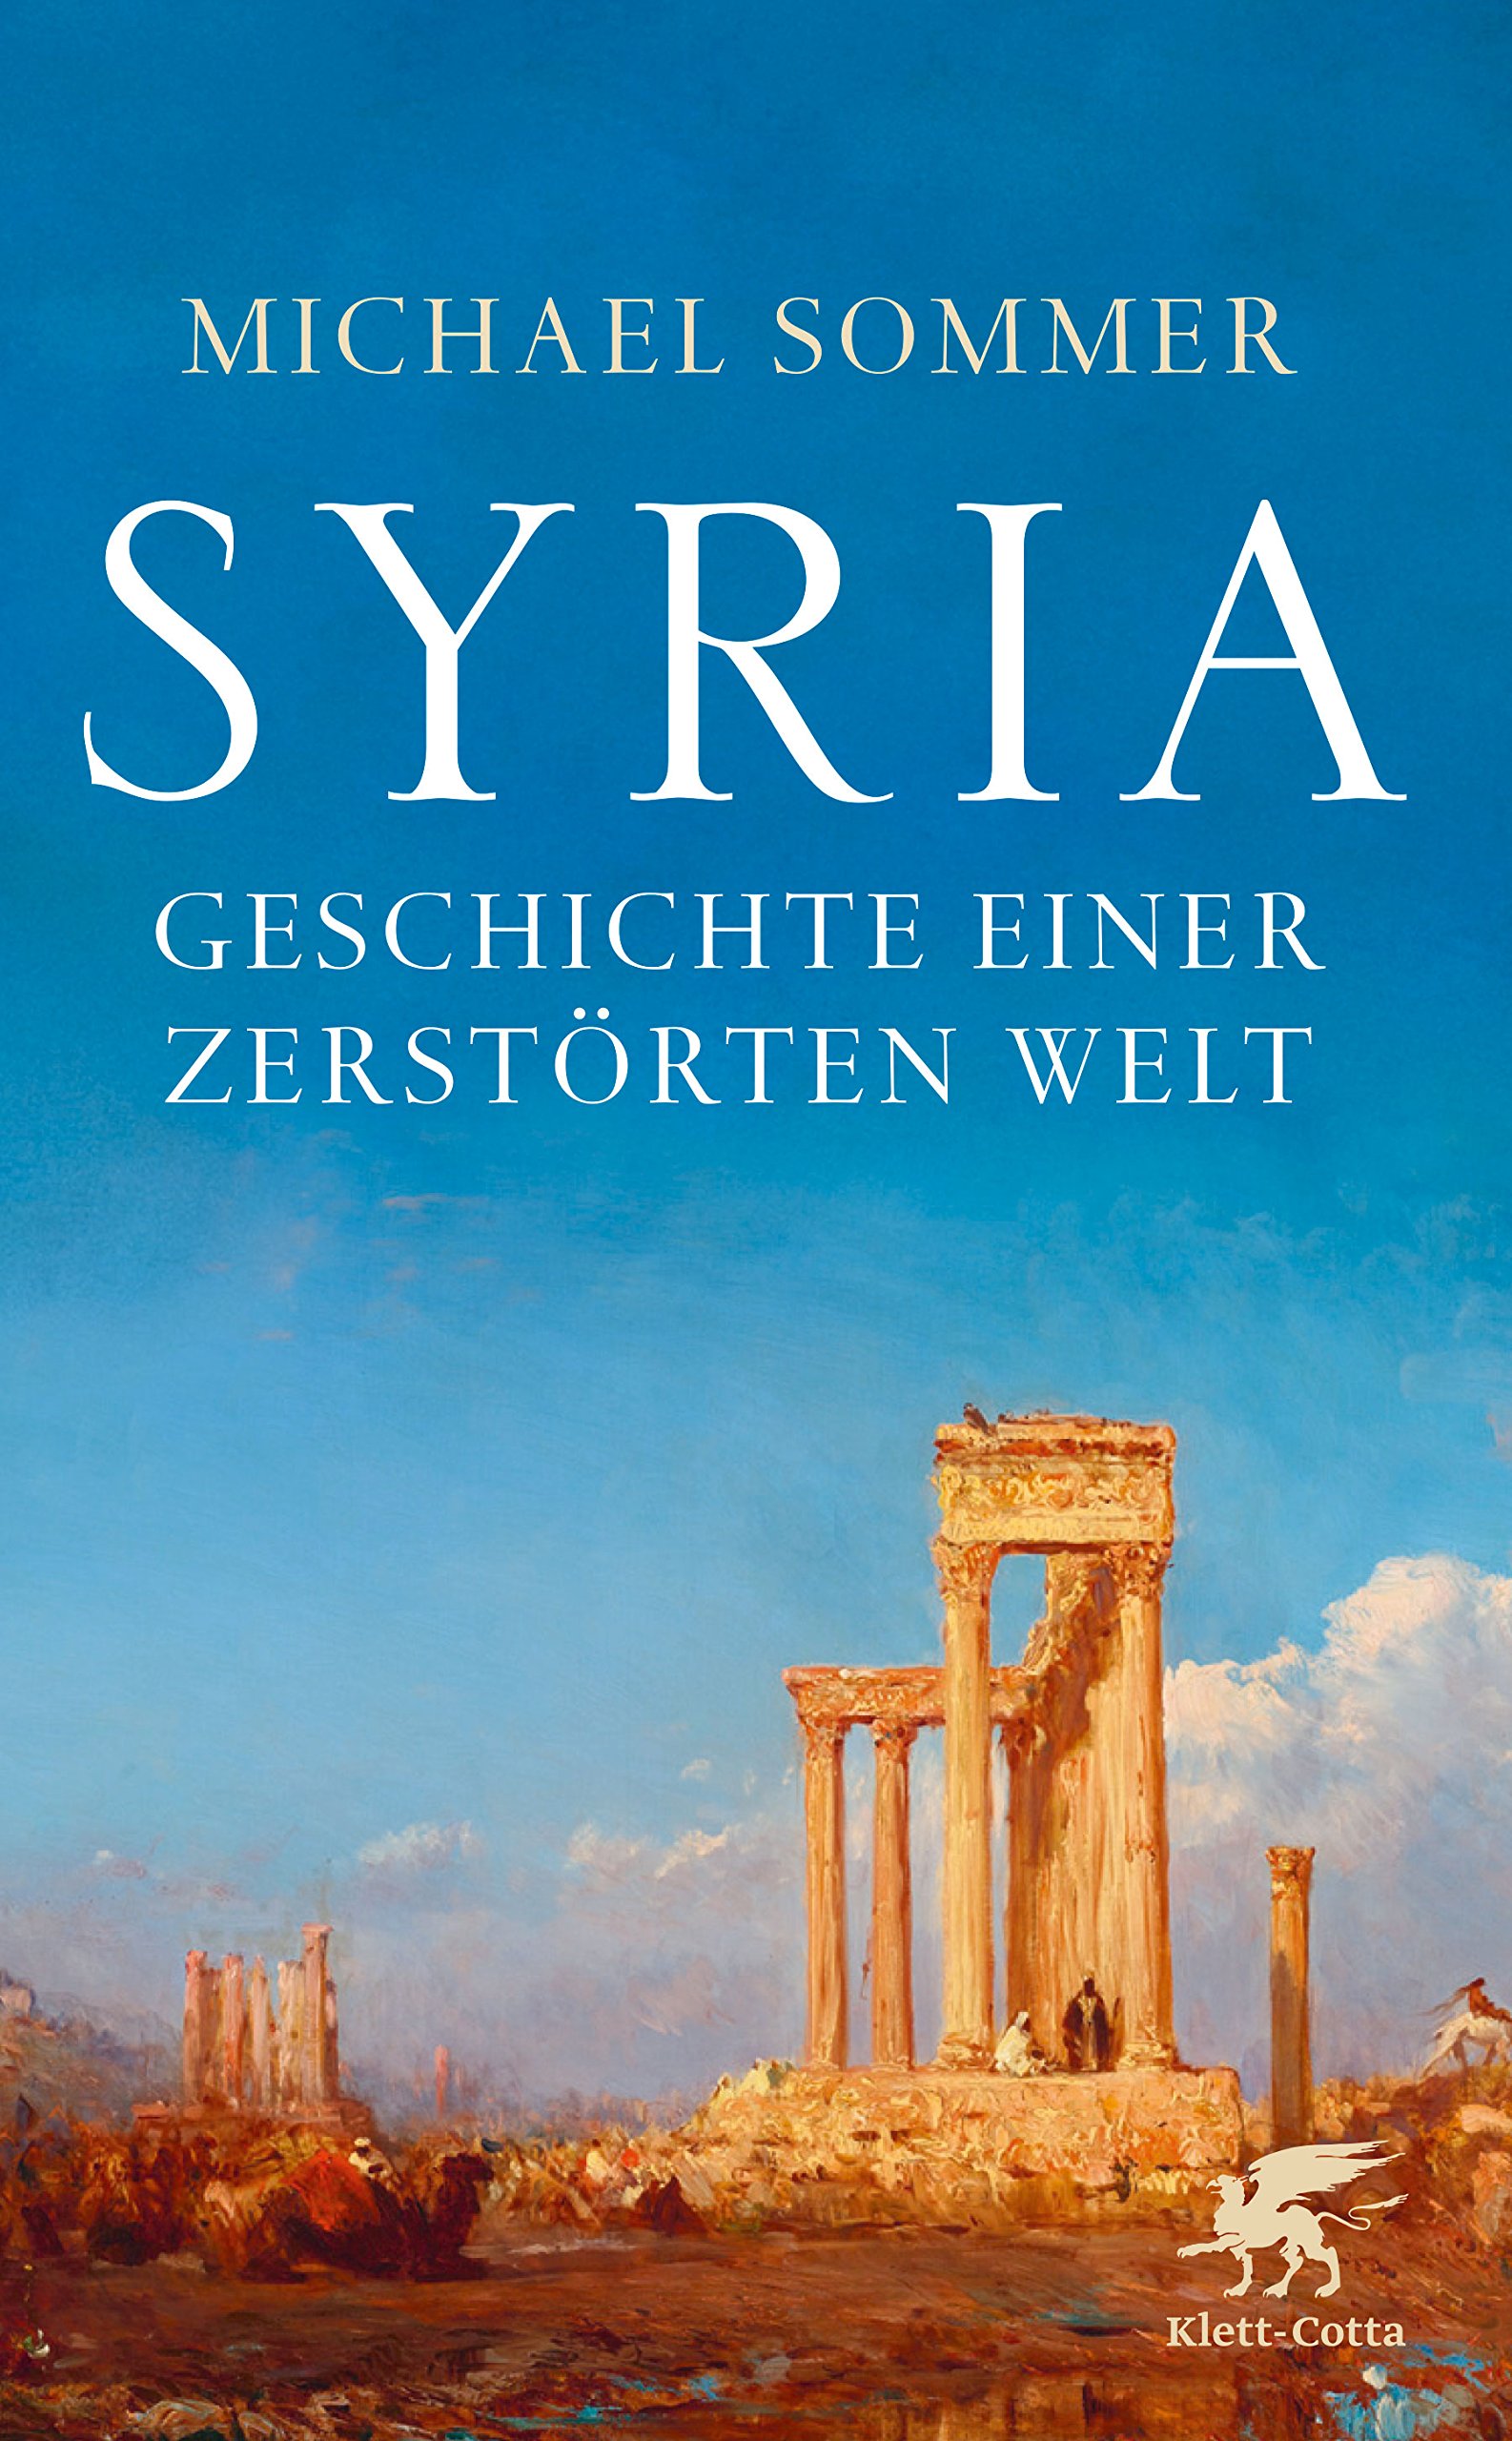 Cover of Michael Sommer's "Syria. Geschichte einer zerstorten Welt" (published by Klett-Cotta)